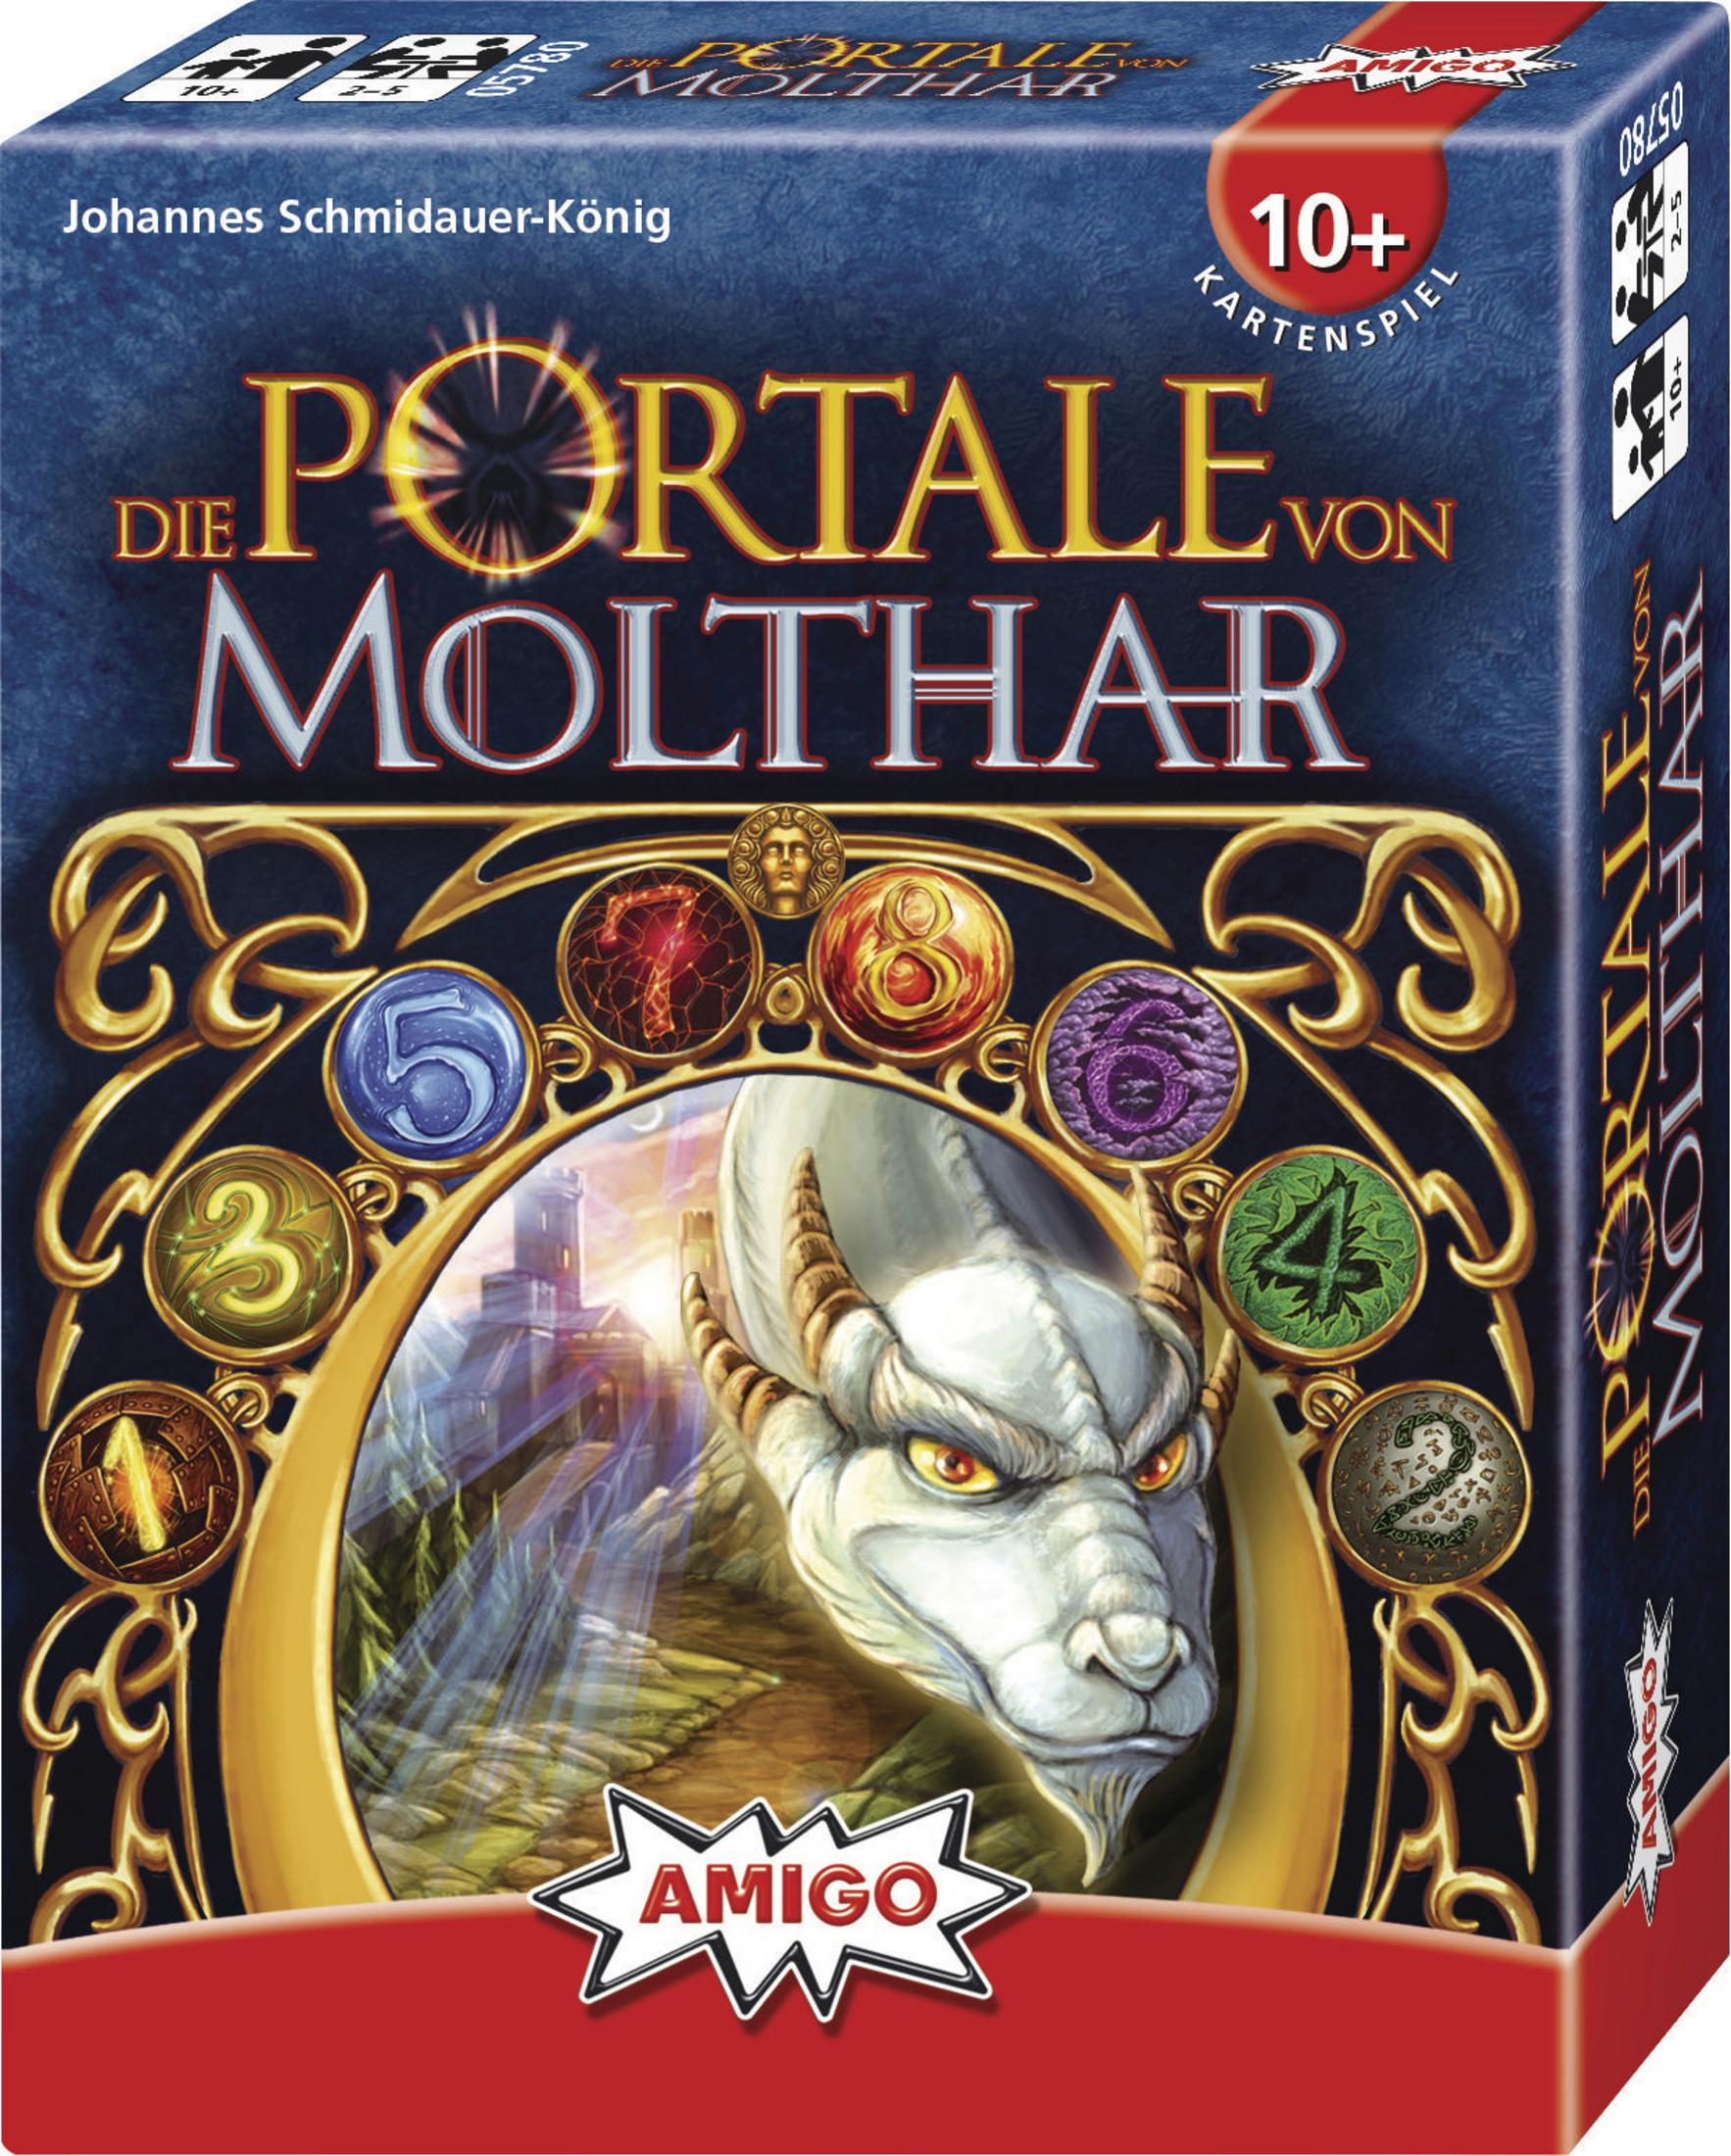 AMIGO MOLTHAR VON Kartenspiel DIE Mehrfarbig PORTALE 05780